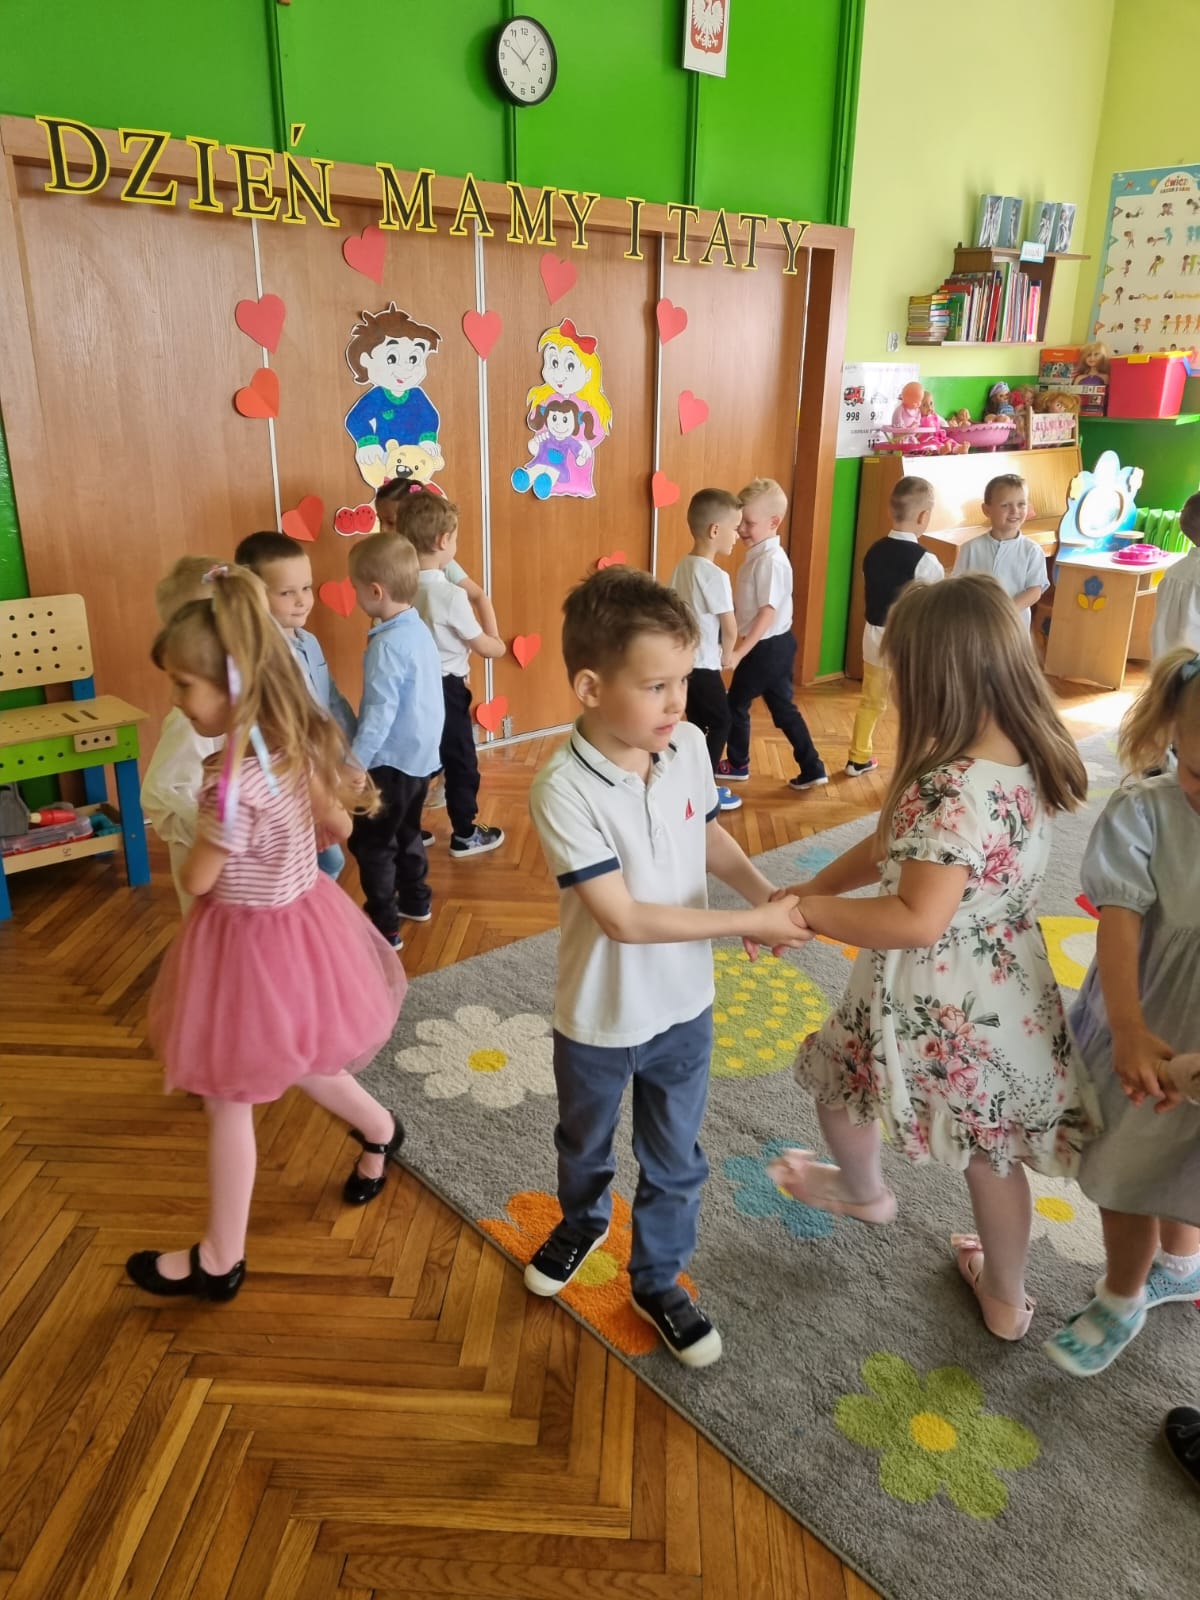 Taniec dzieci w parach